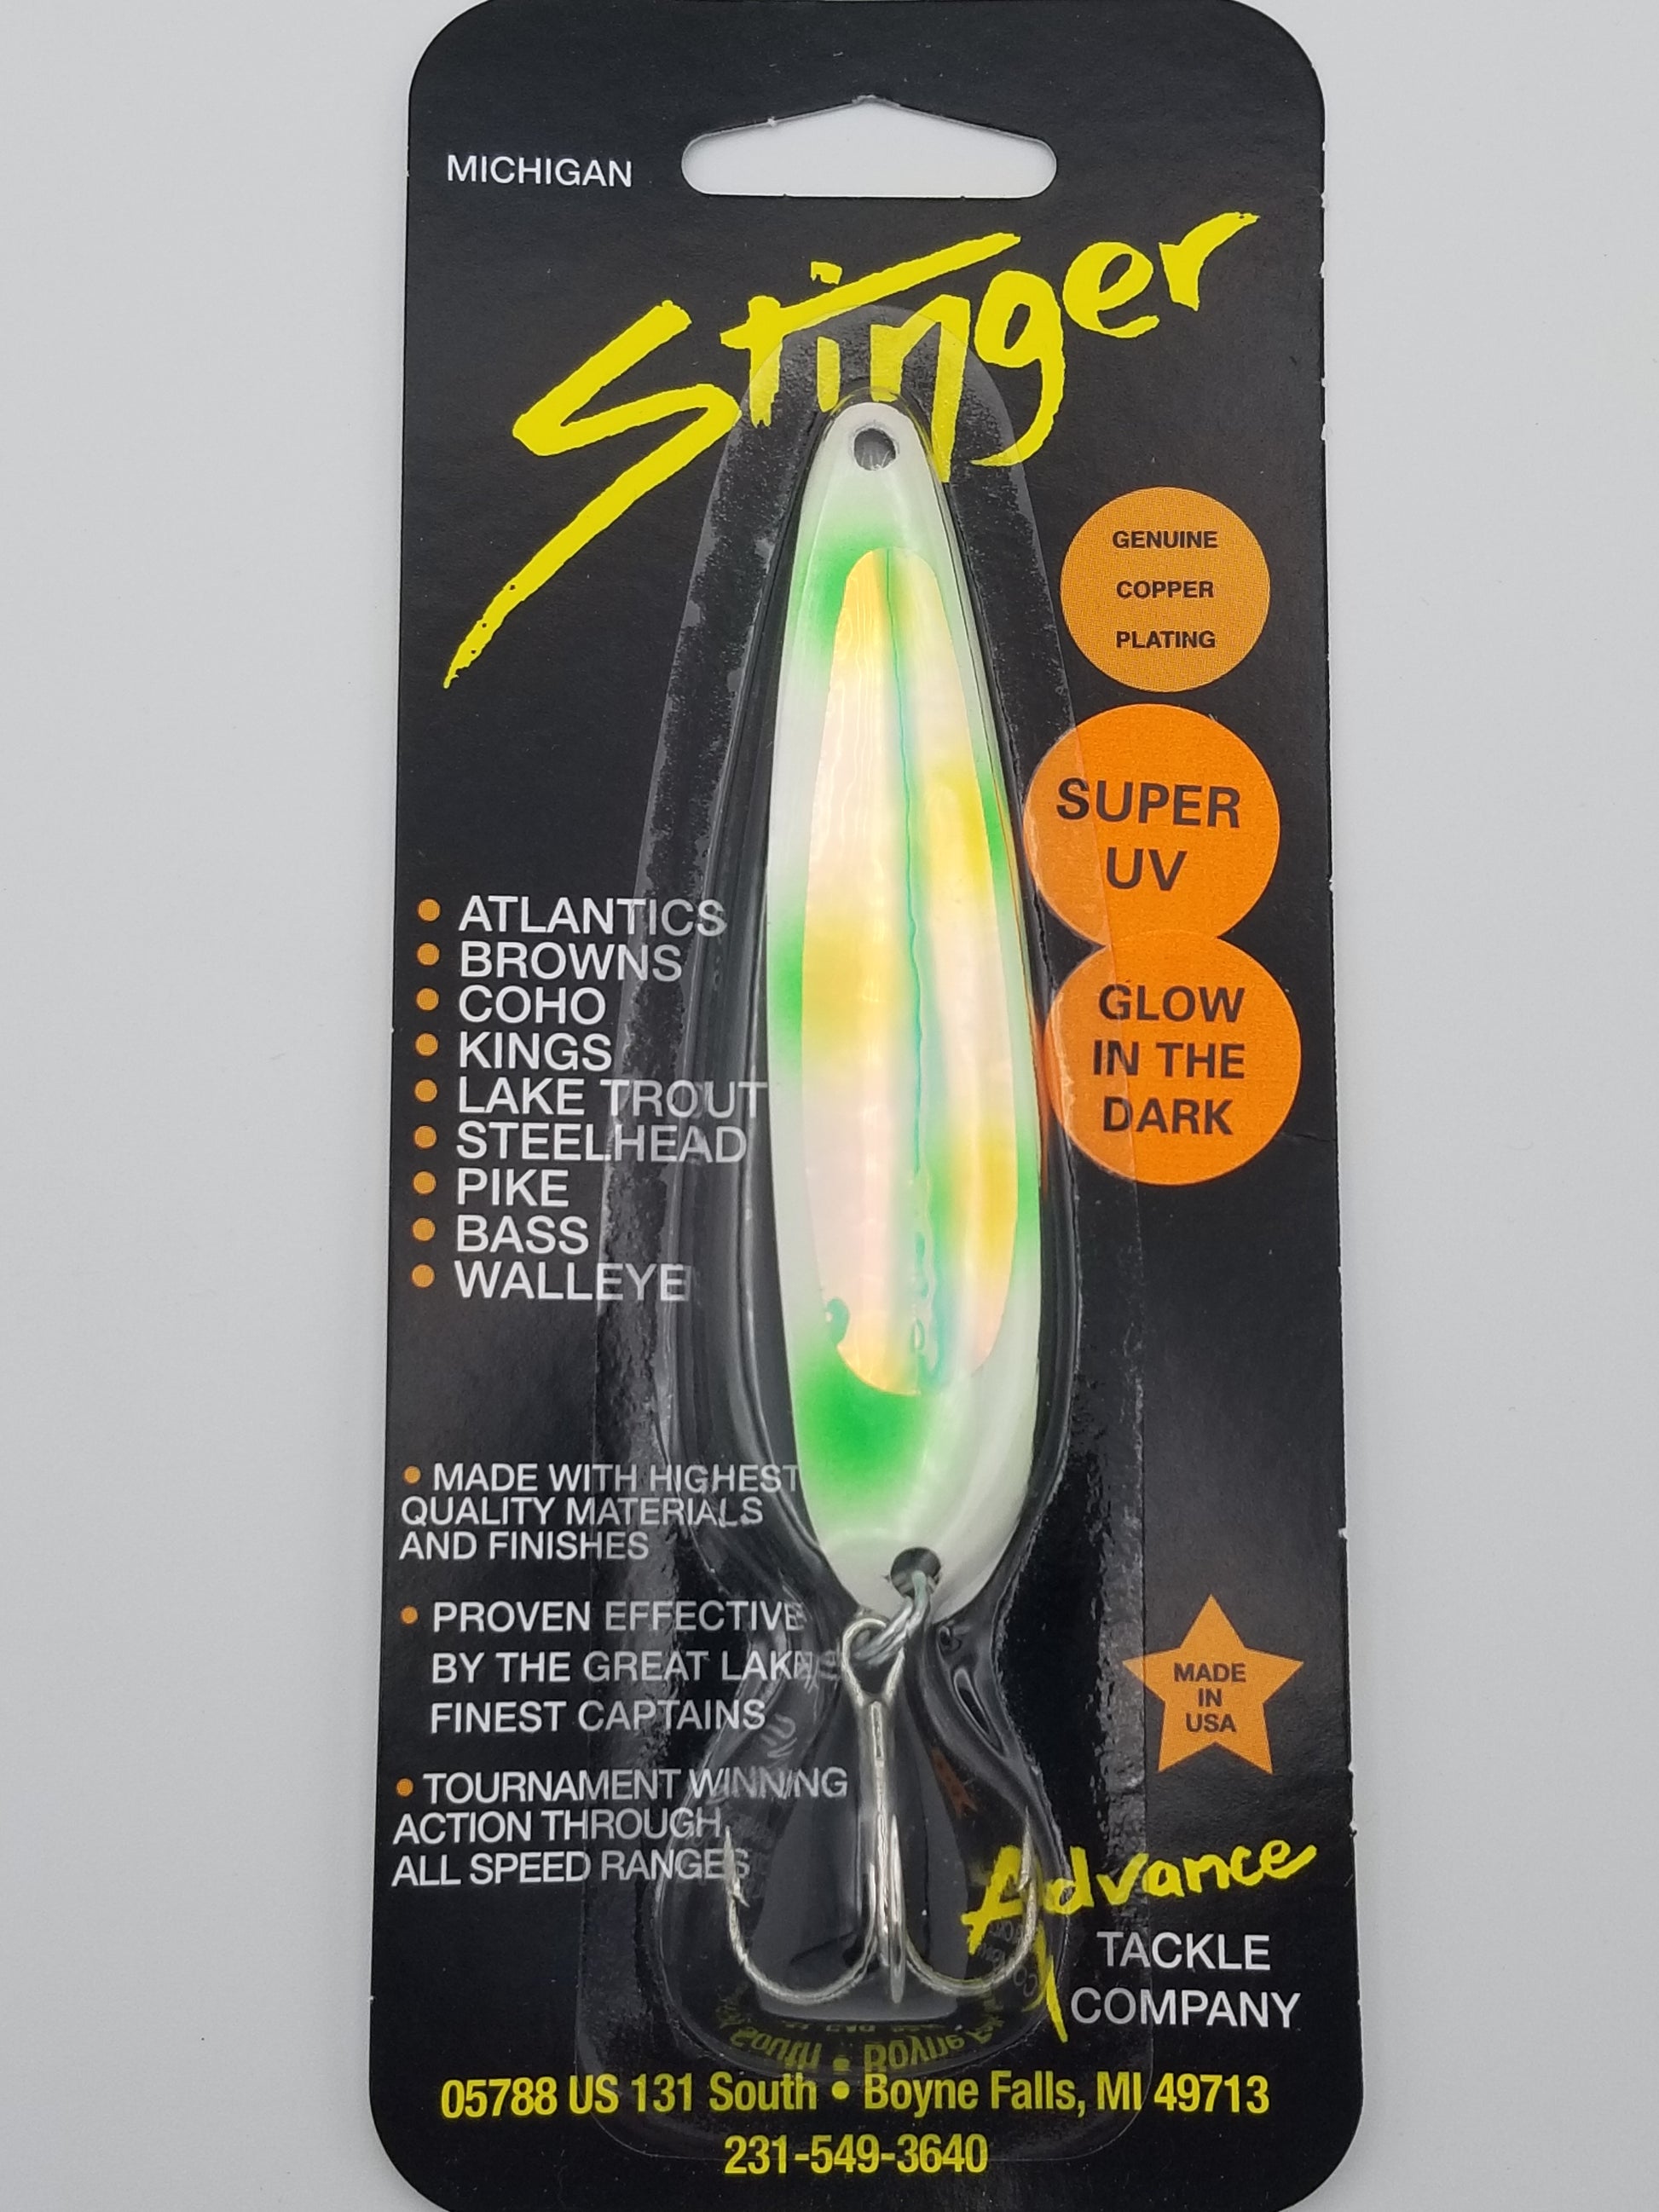 Michigan Stinger Standard 3.75 Spoon (Glow) – Tall Tales Bait